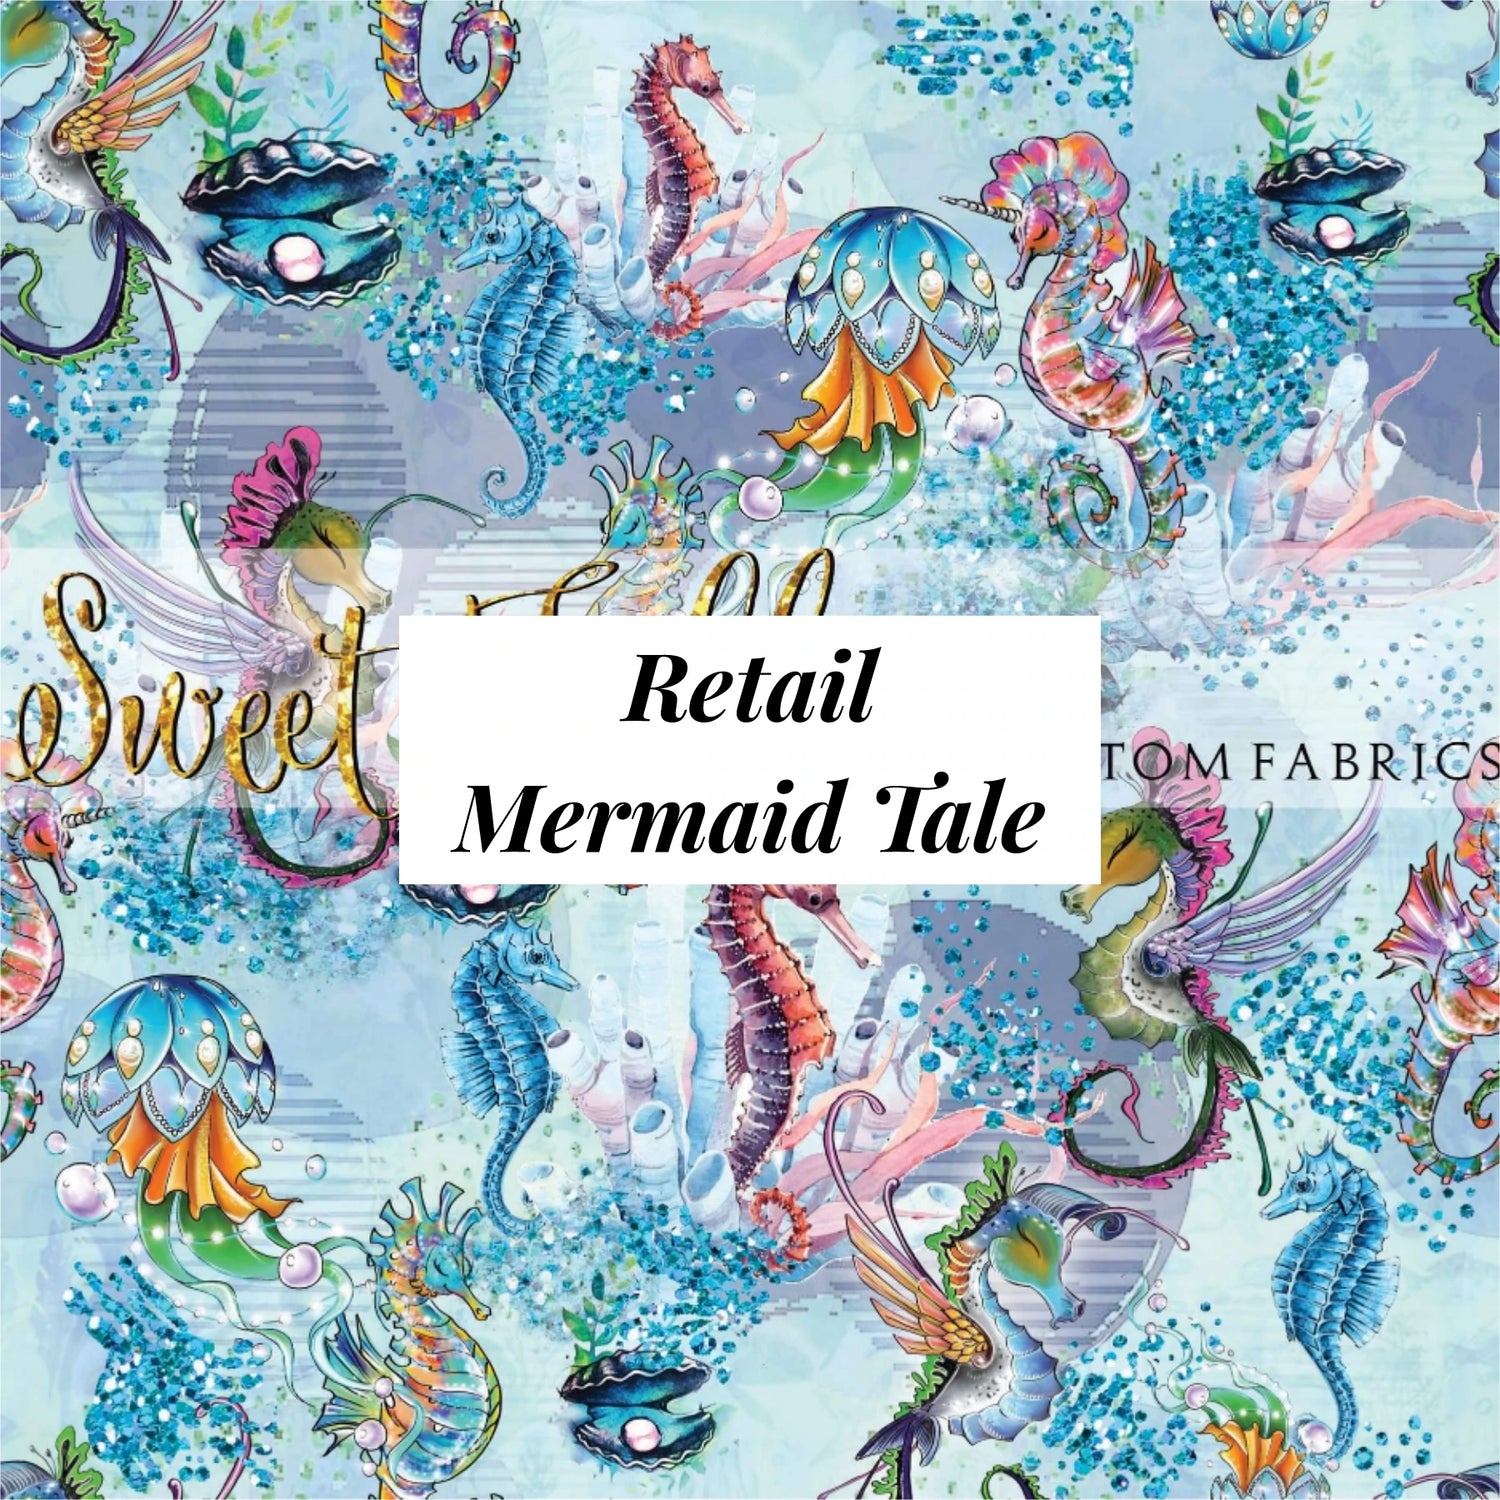 Retail Mermaid Tale